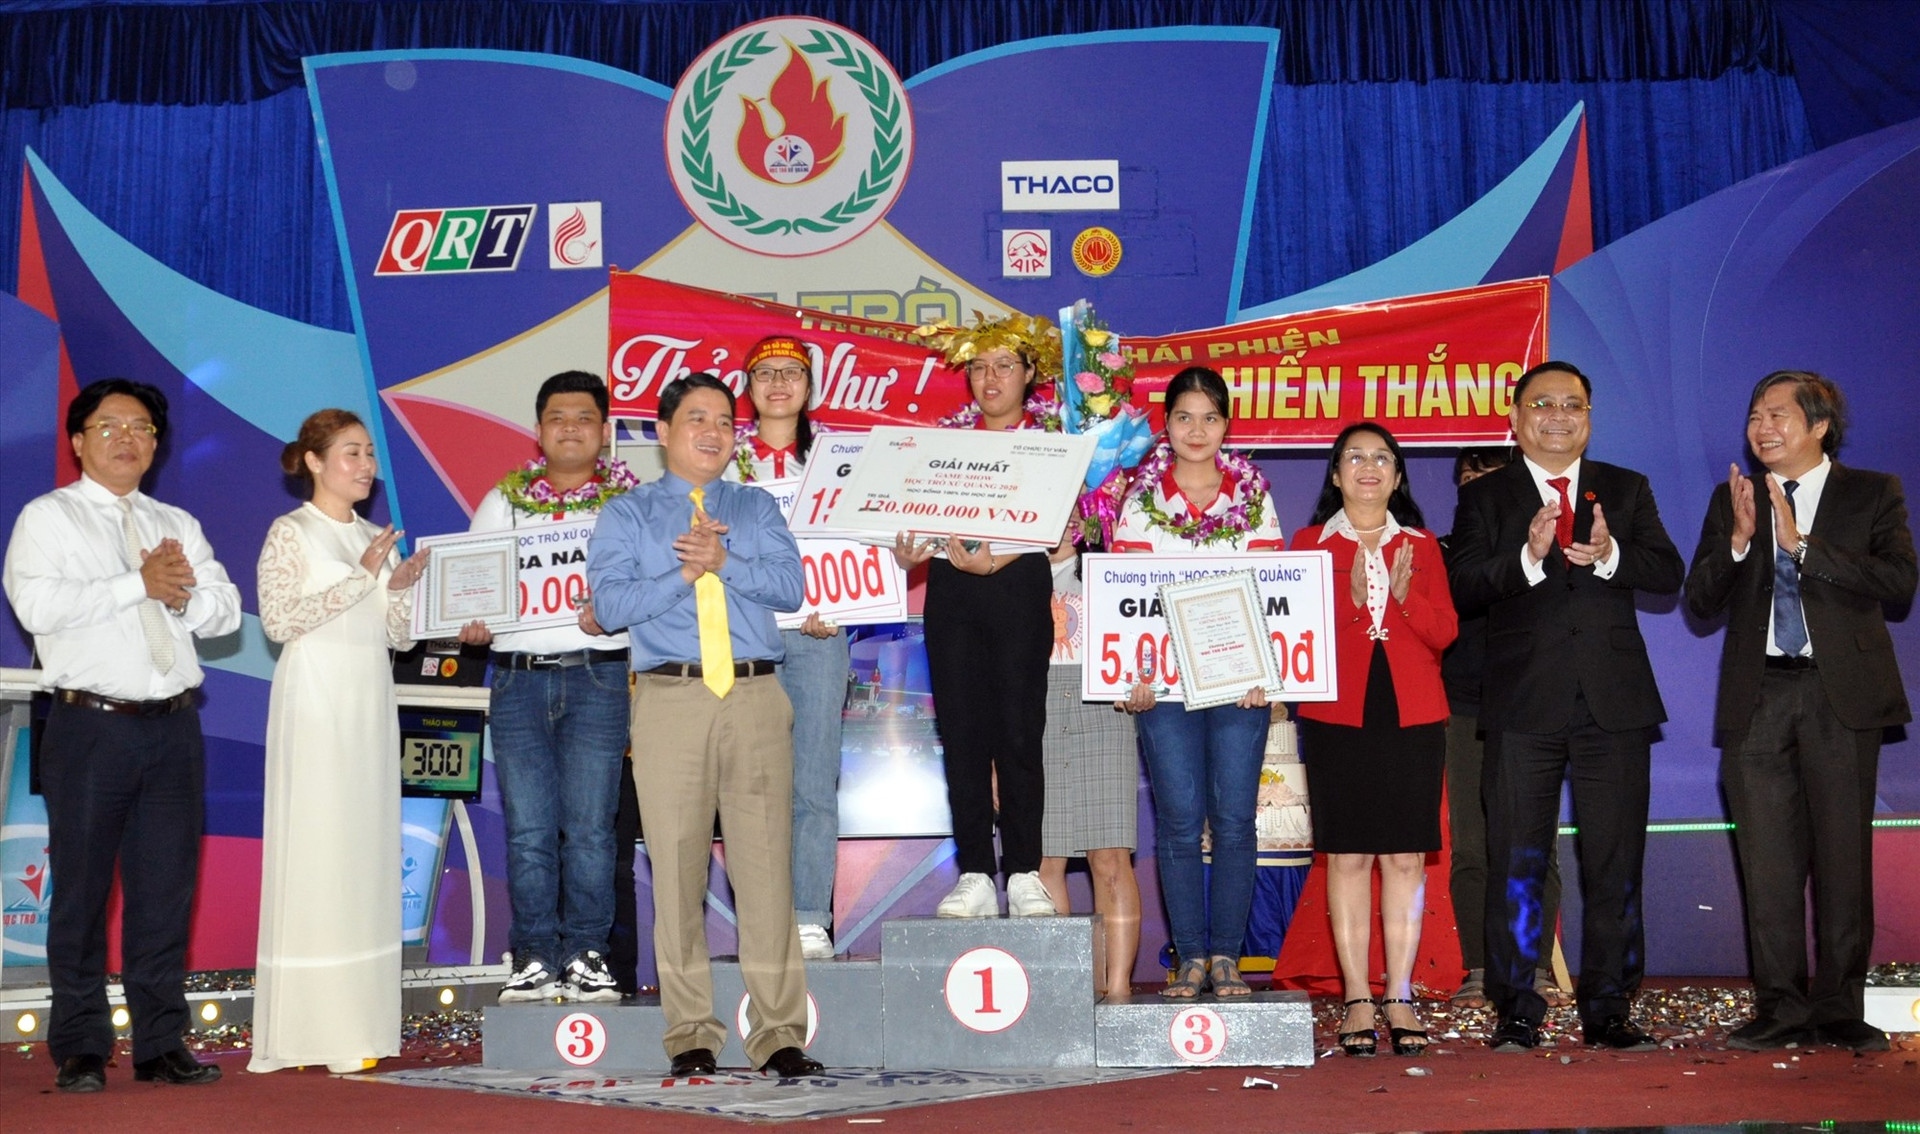 Phó Chủ tịch UBND tỉnh Trần Văn Tân cùng lãnh đạo QRT, Sở GD-ĐT và các nhà tài trợ trao giải cho thí sinh sau chung kết. Ảnh: X.P